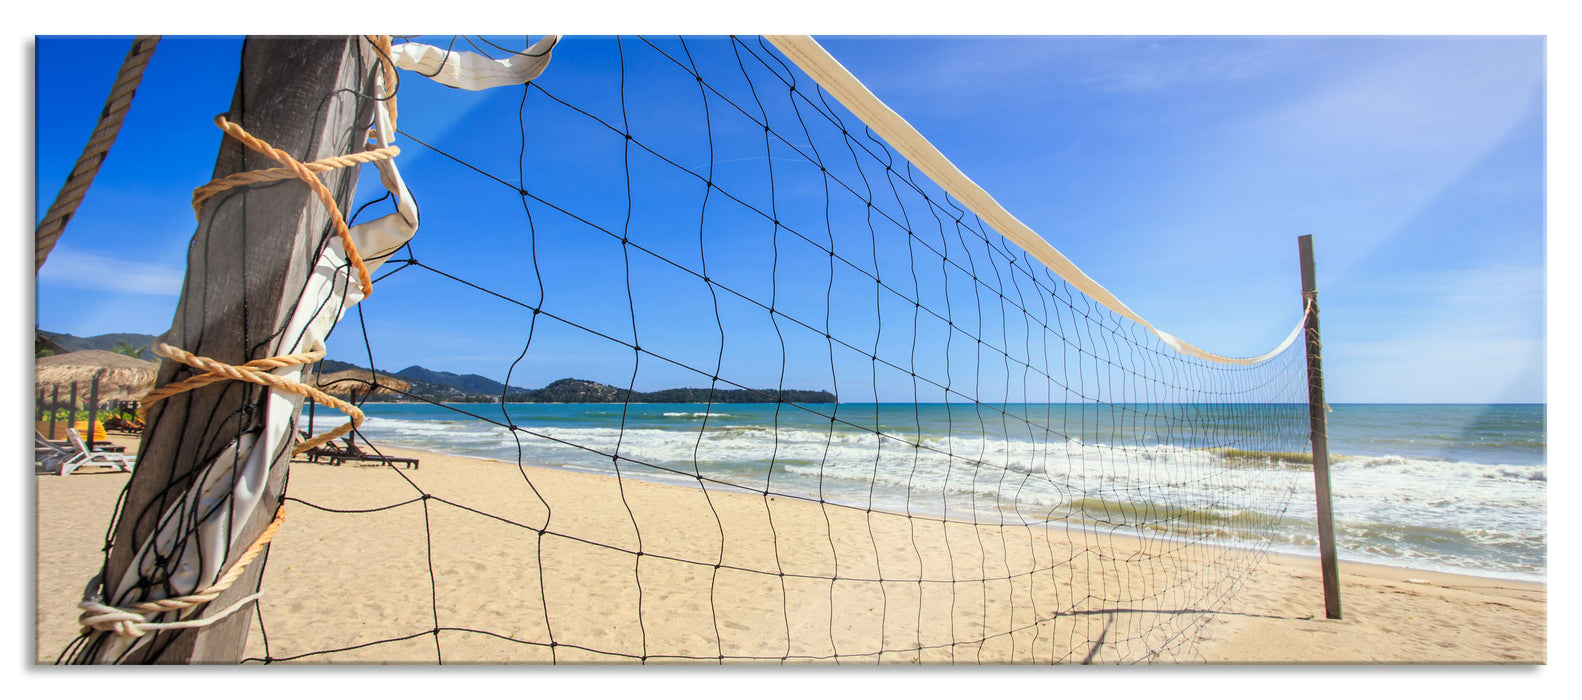 Volleyballnetz am Strand, Glasbild Panorama